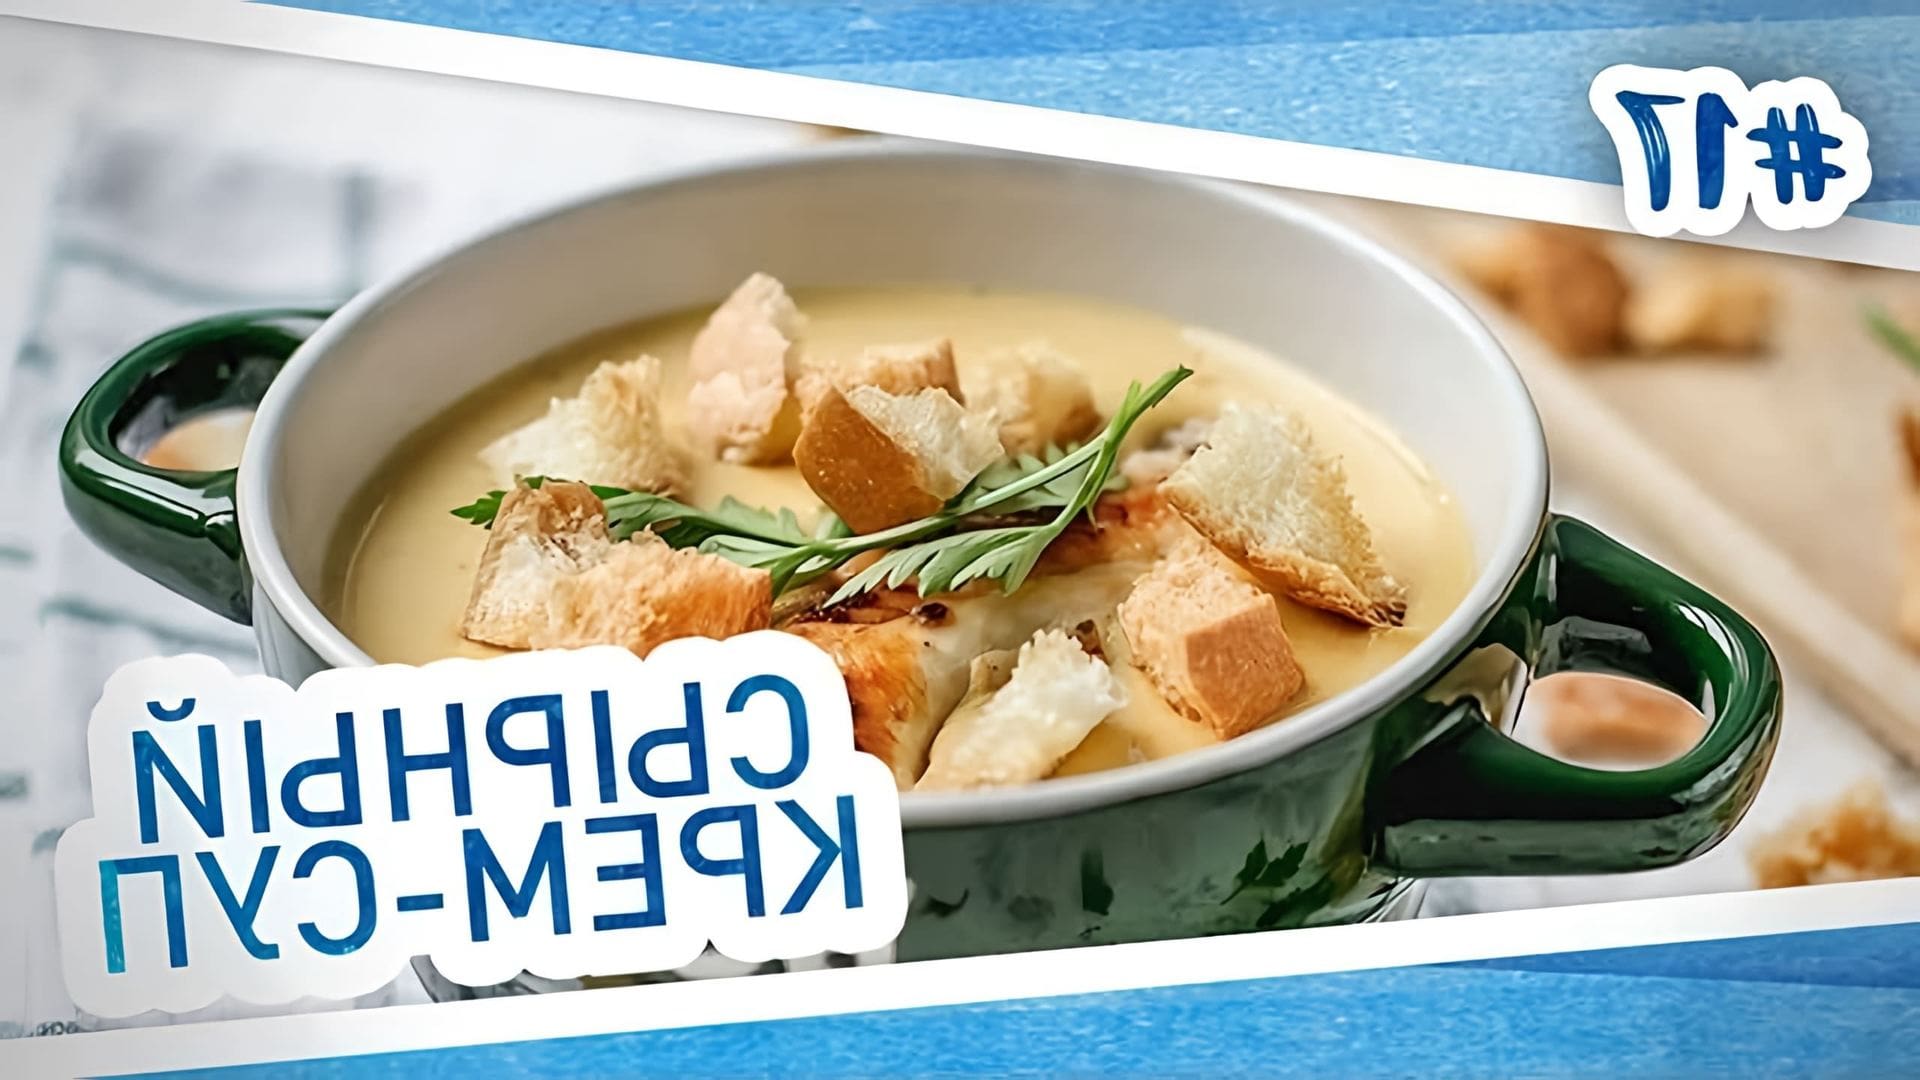 В этом видео демонстрируется рецепт приготовления сырного крем-супа с курицей